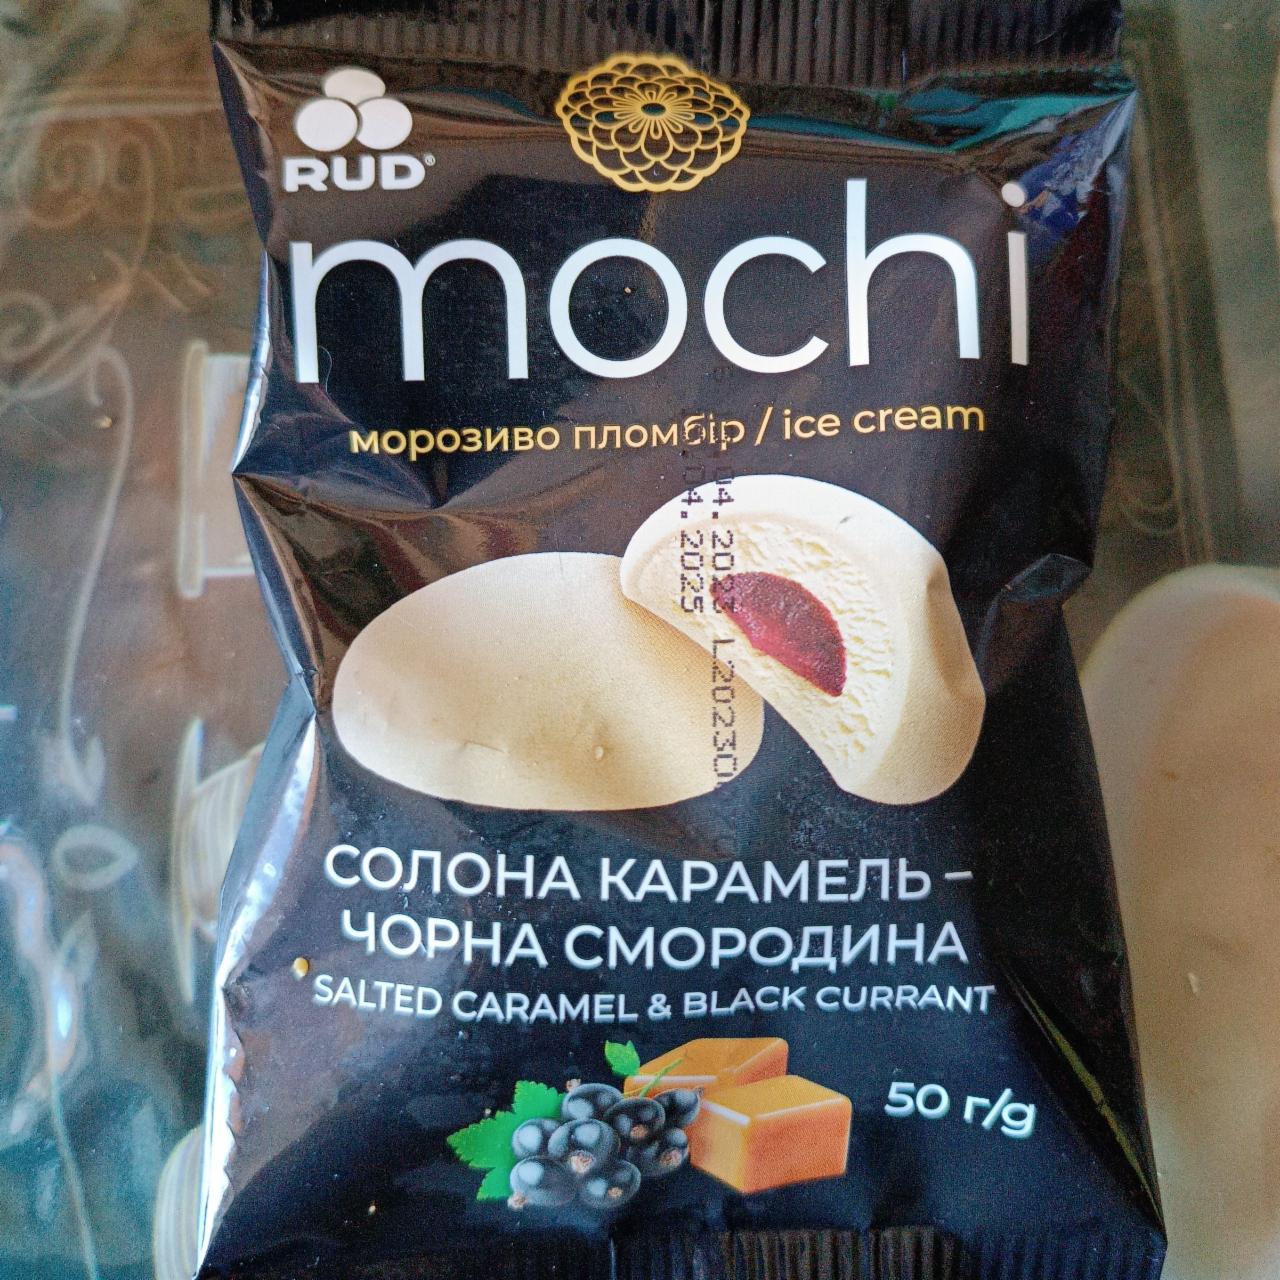 Фото - Мороженое десерт Mochi соленая карамель и черная смородина Rud Рудь